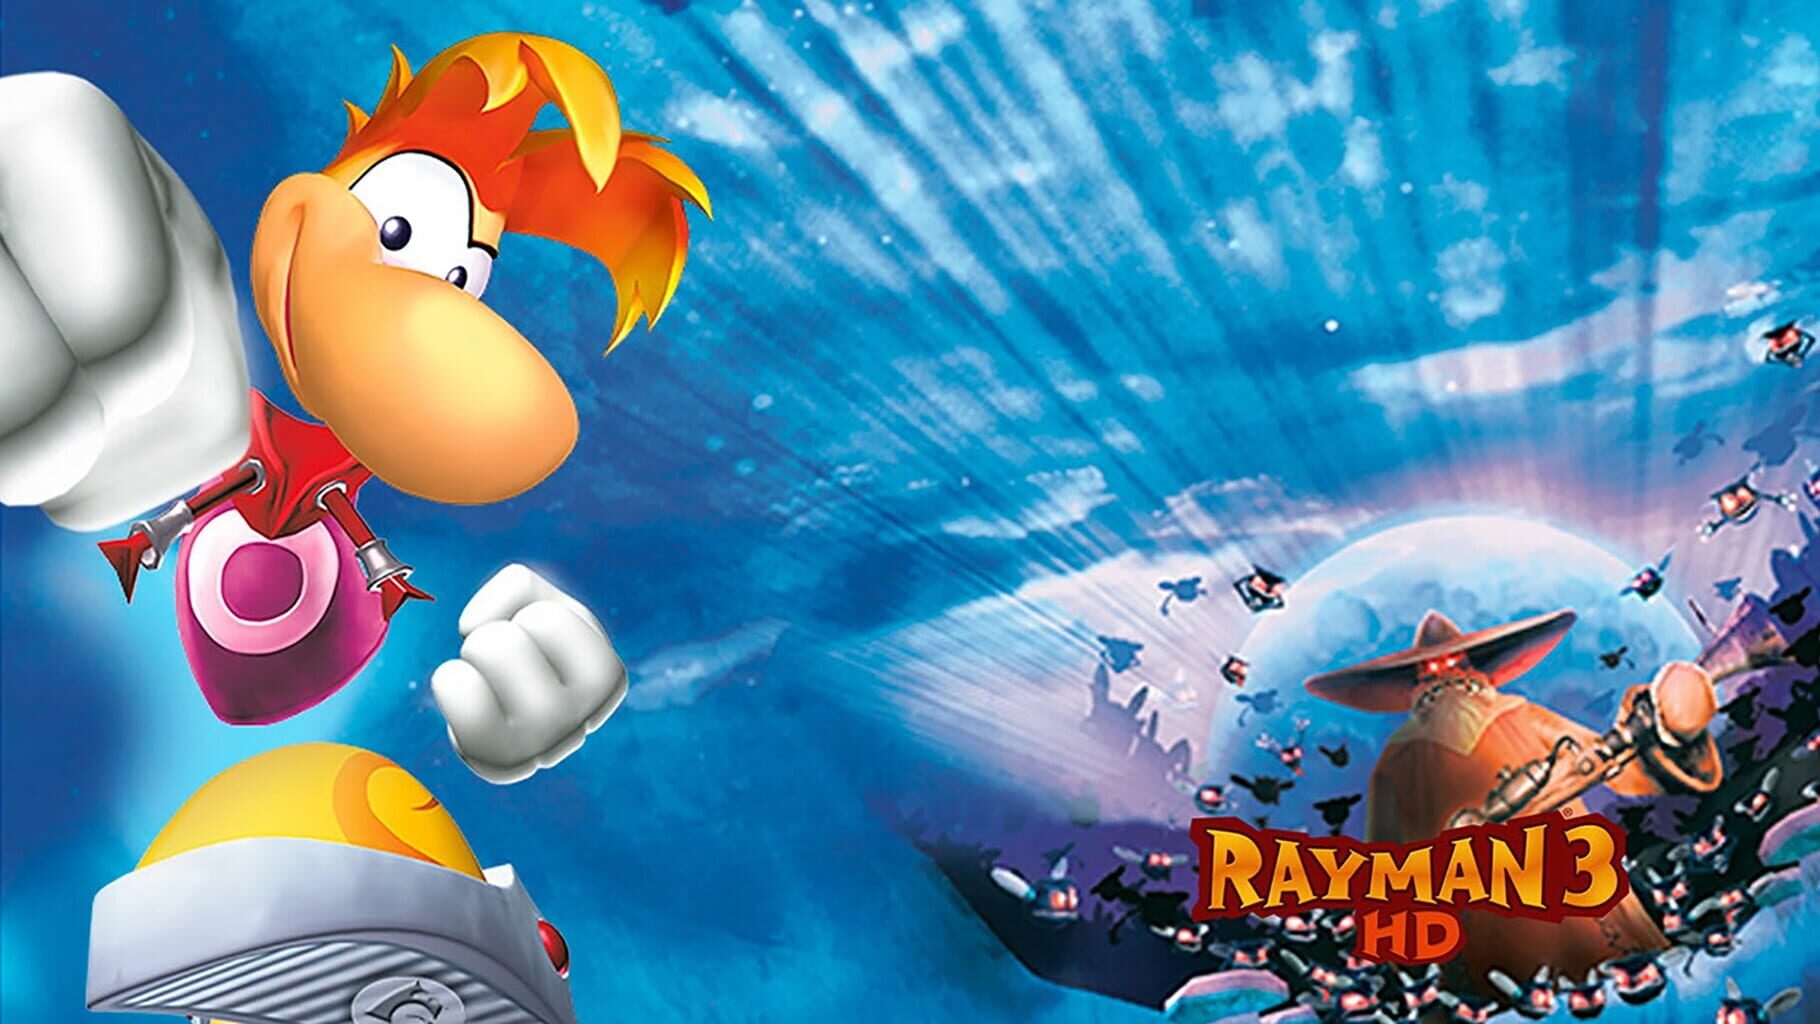 Arte - Rayman 3 HD